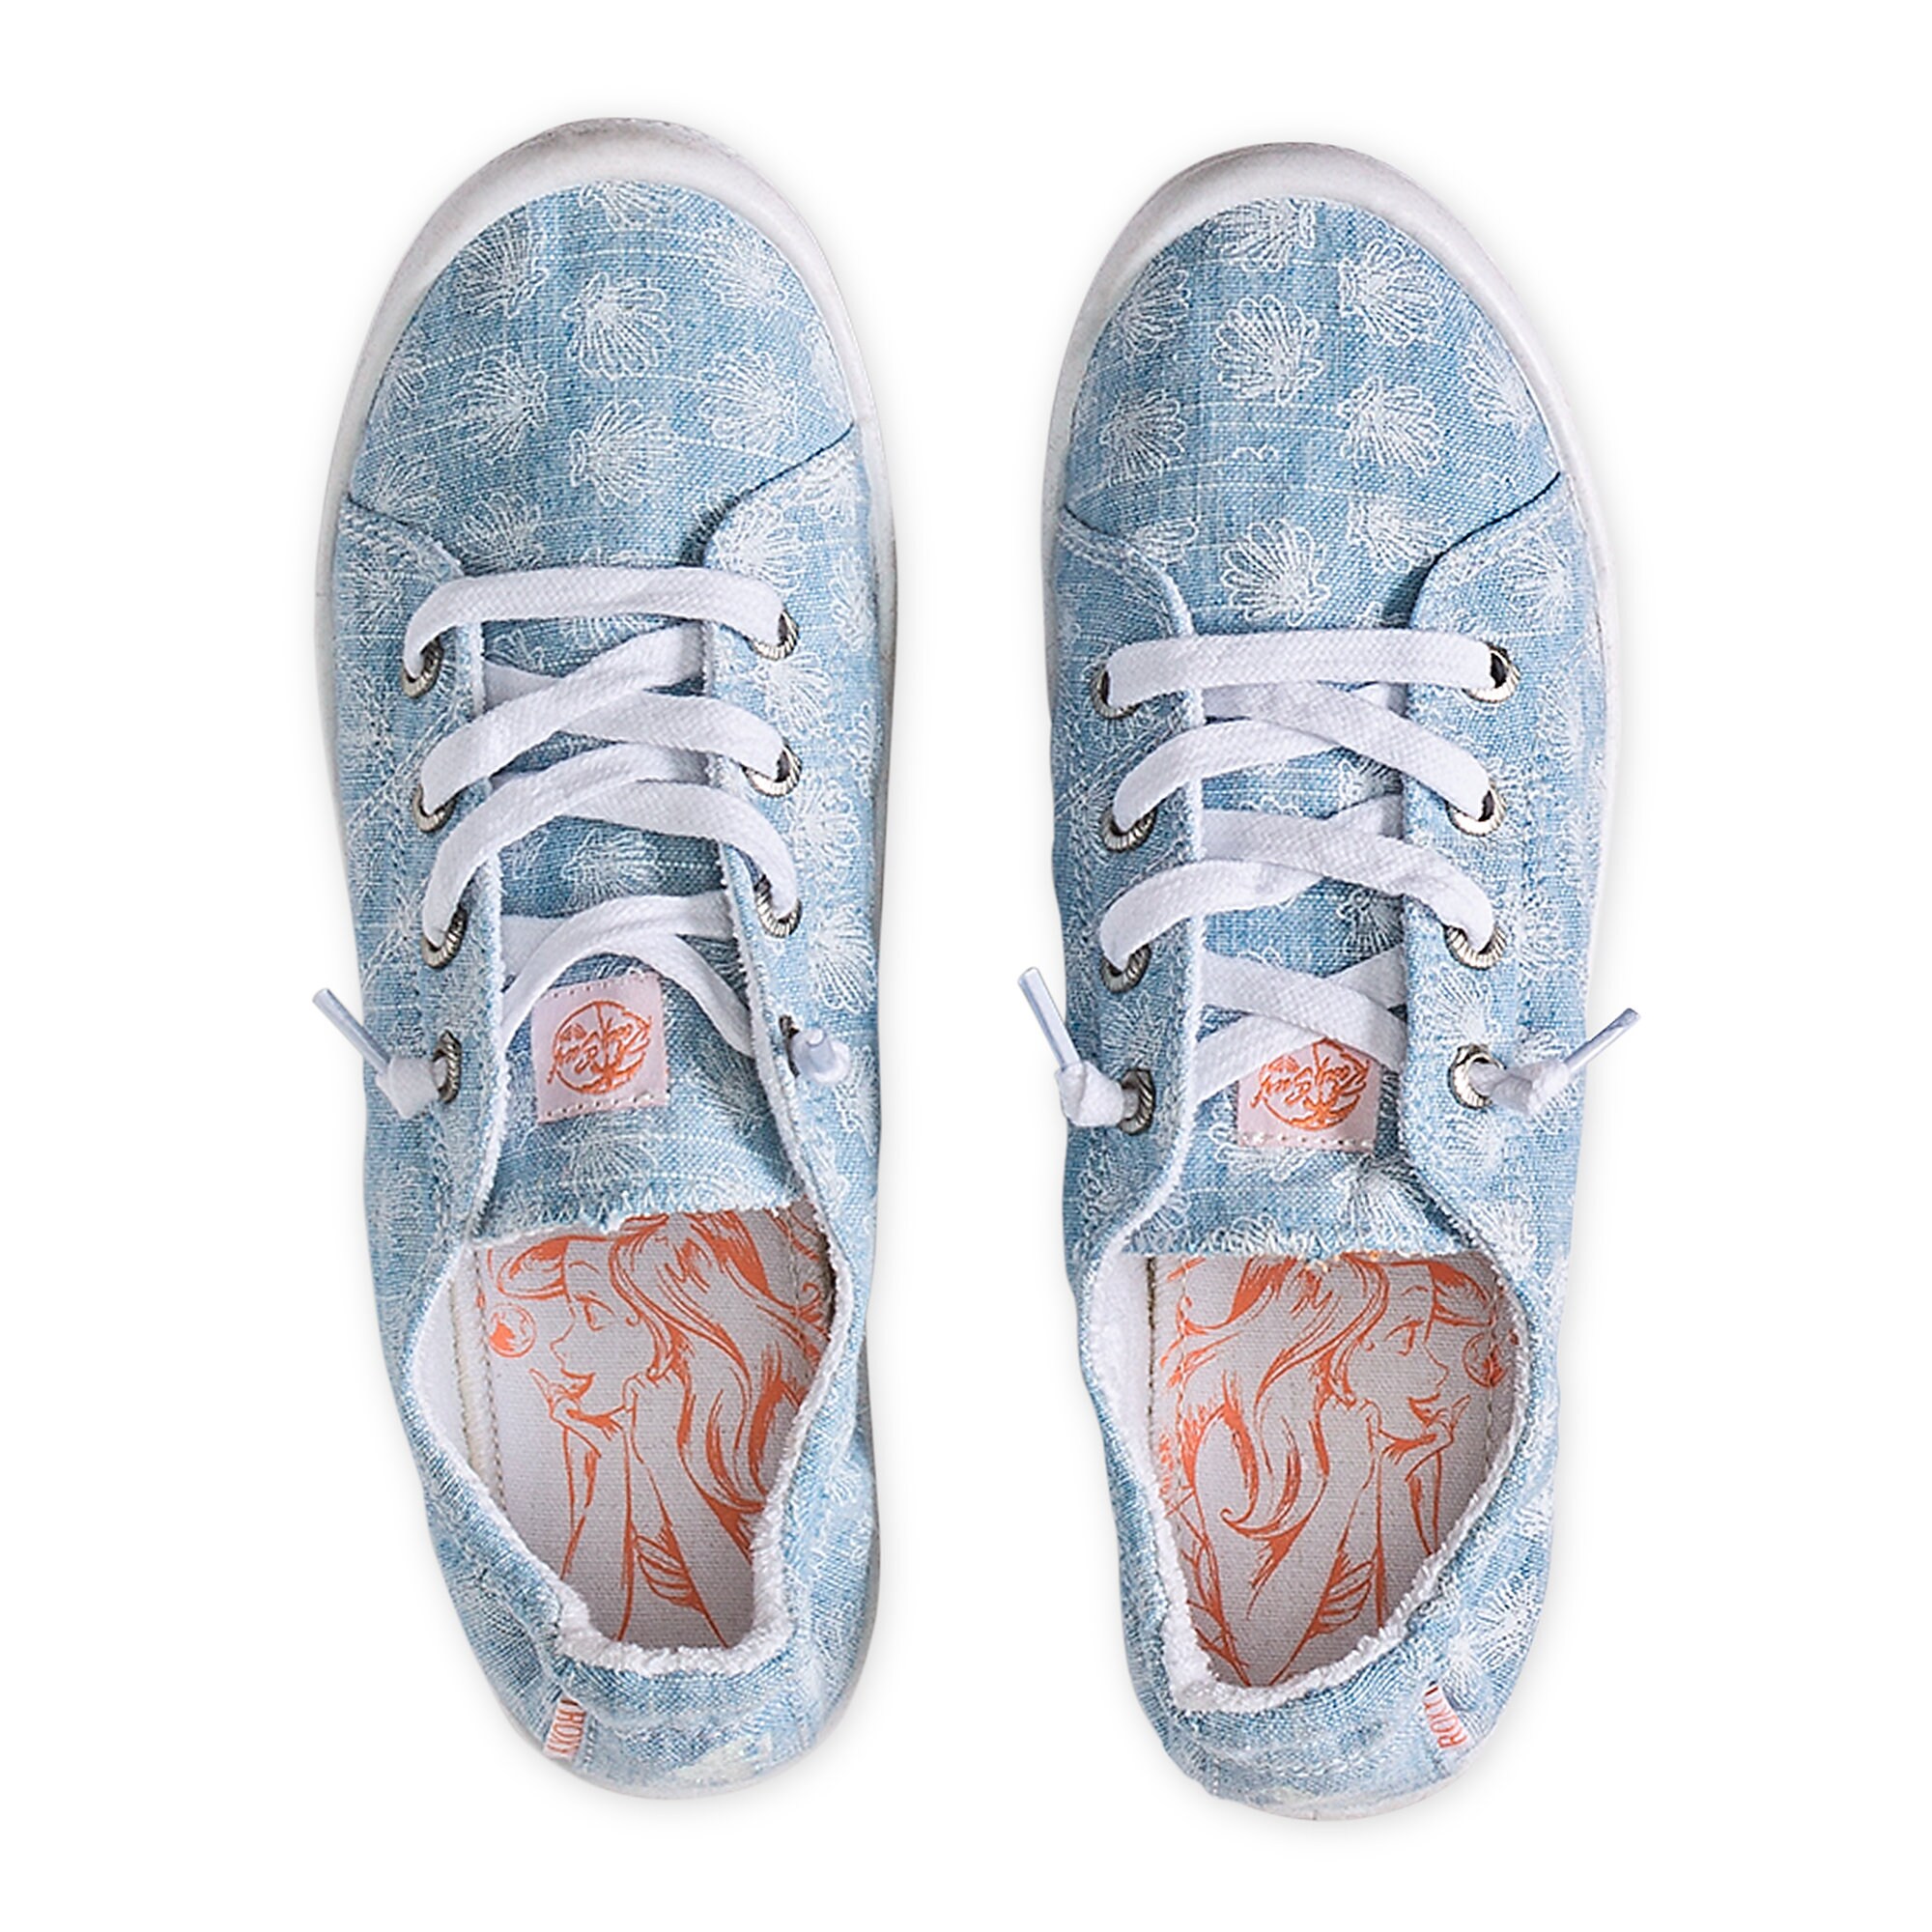 Ariel Sneakers for Girls by ROXY Girl